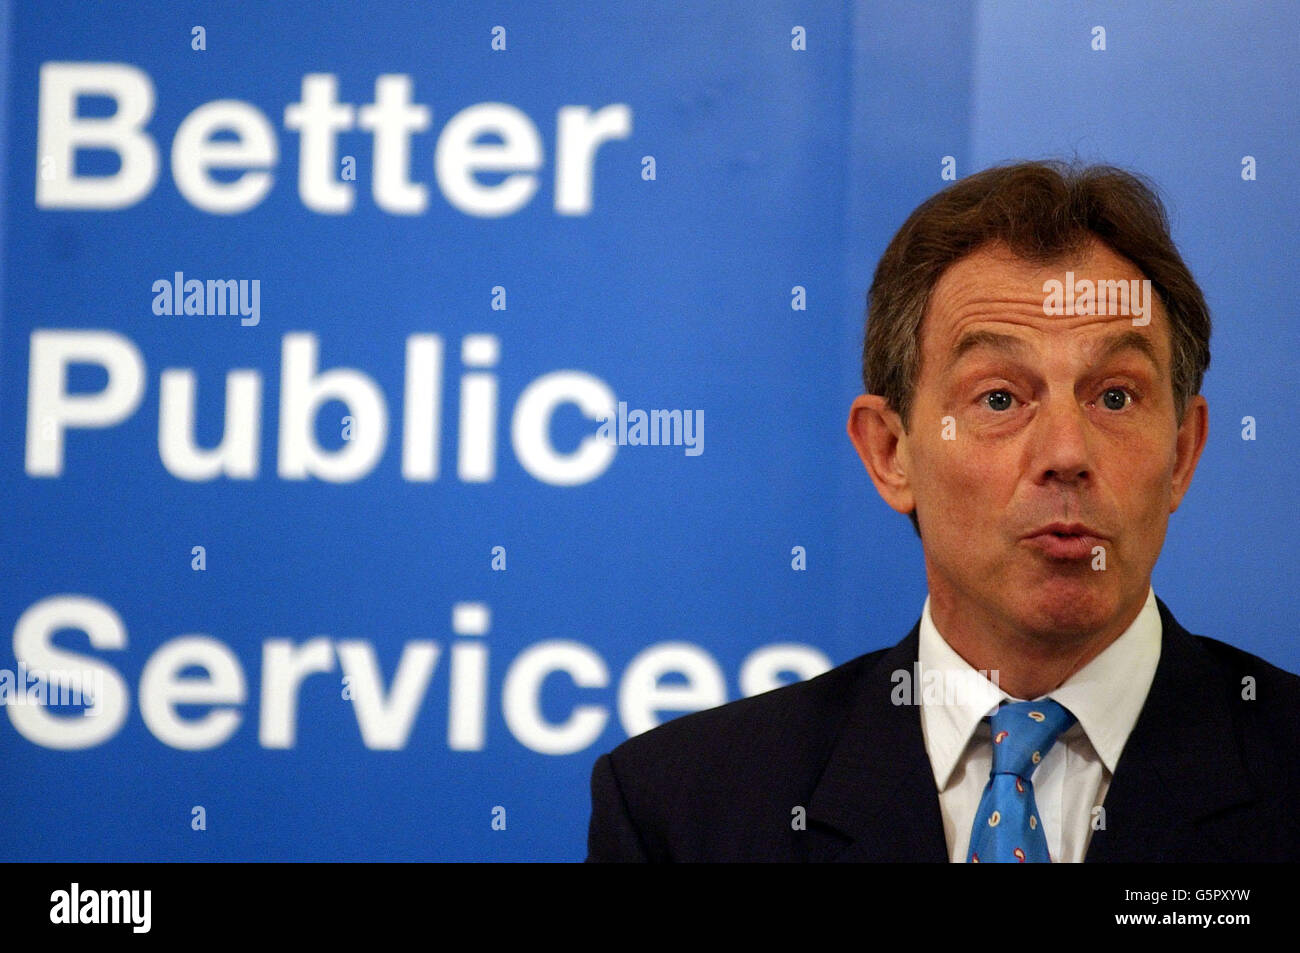 Le Premier ministre Tony Blair s'est exprimé lors du lancement d'une brochure sur les services publics à Downing Street, dans le centre de Londres. Banque D'Images